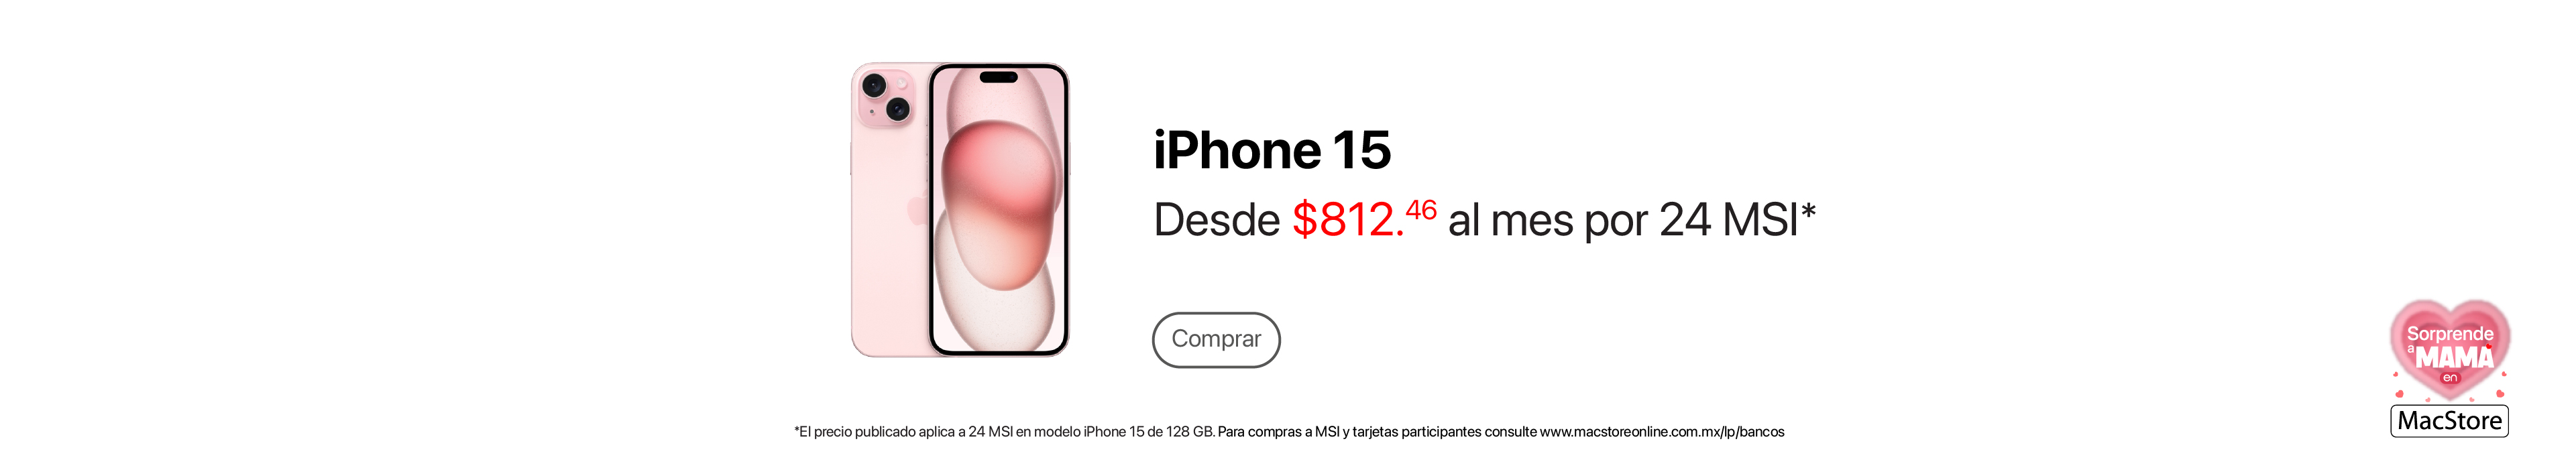 iPhone 15 promo 1mayo